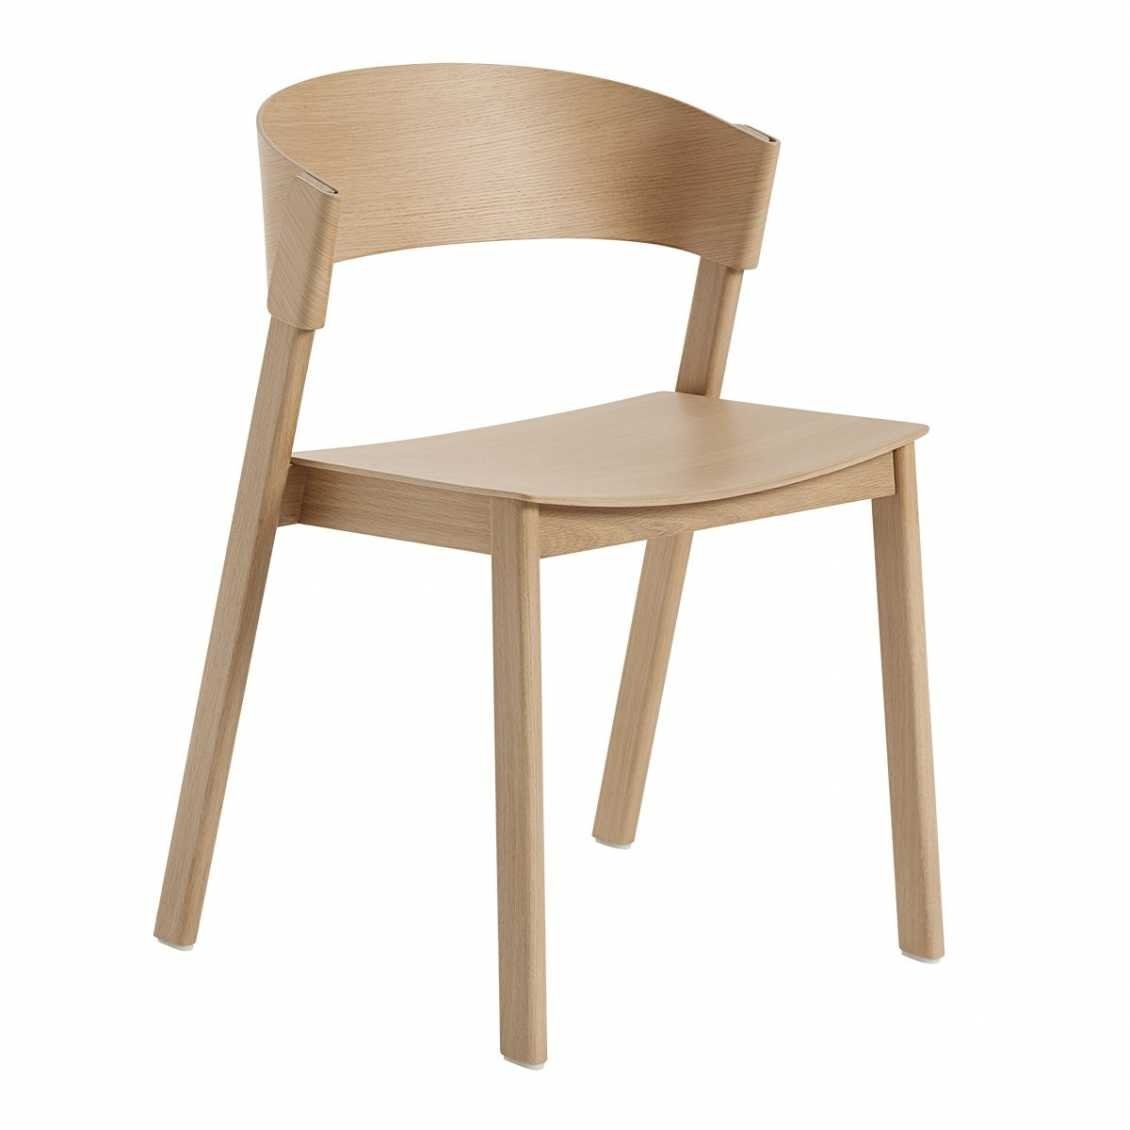 Er is behoefte aan Ambtenaren Volharding Cover side stoel eiken - Nordic New